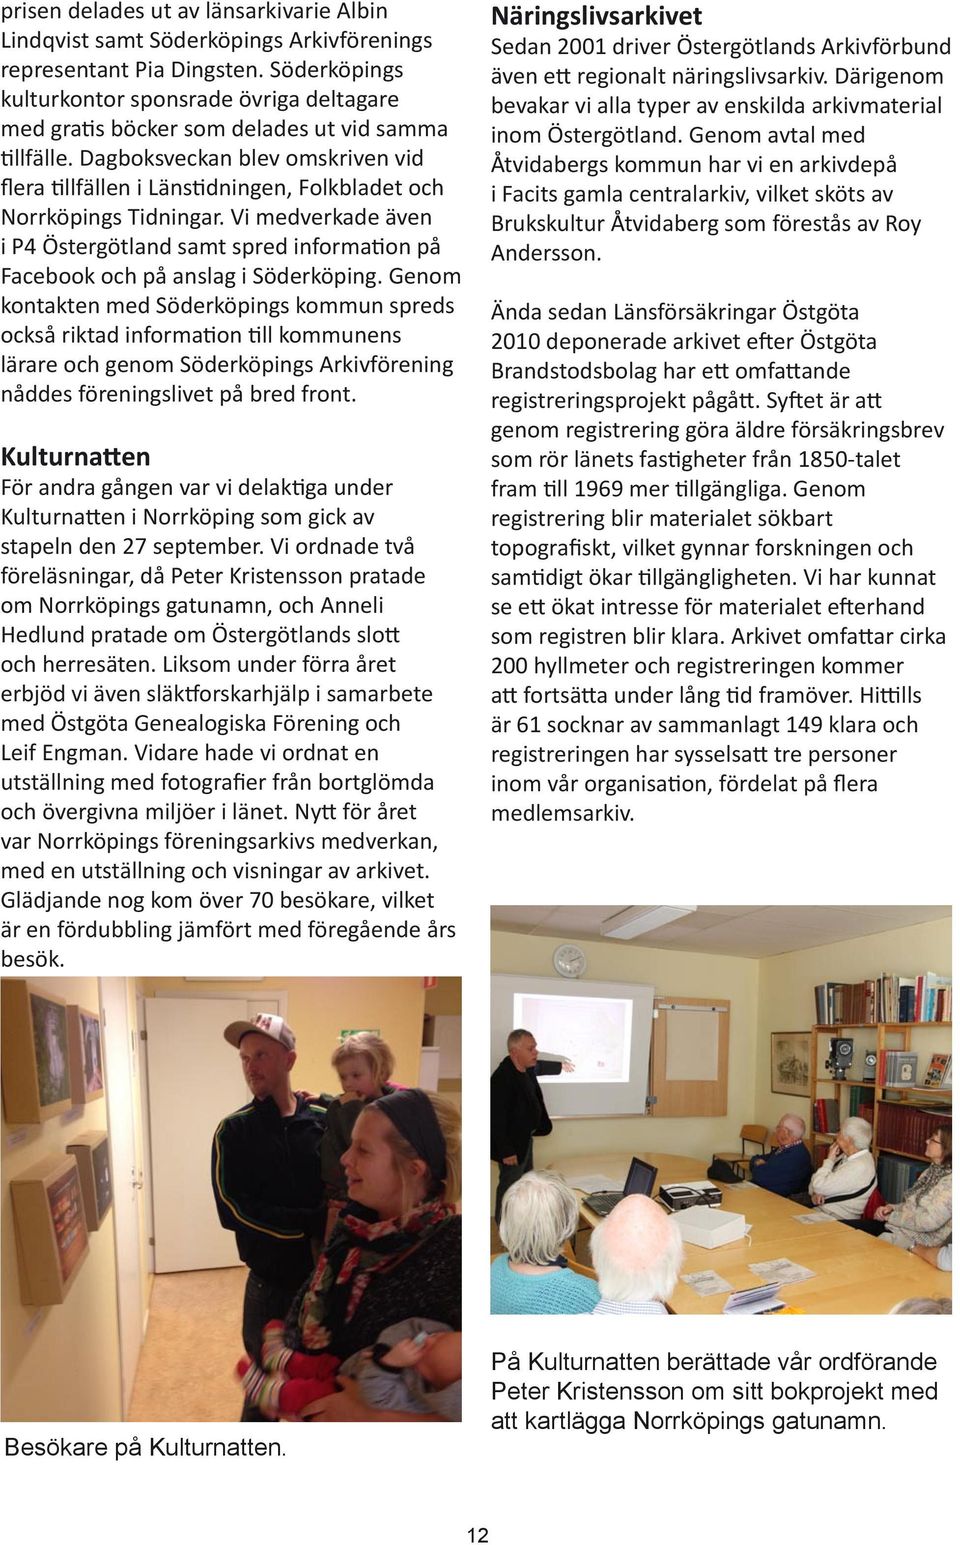 Dagboksveckan blev omskriven vid flera llfällen i Läns dningen, Folkbladet och Norrköpings Tidningar.